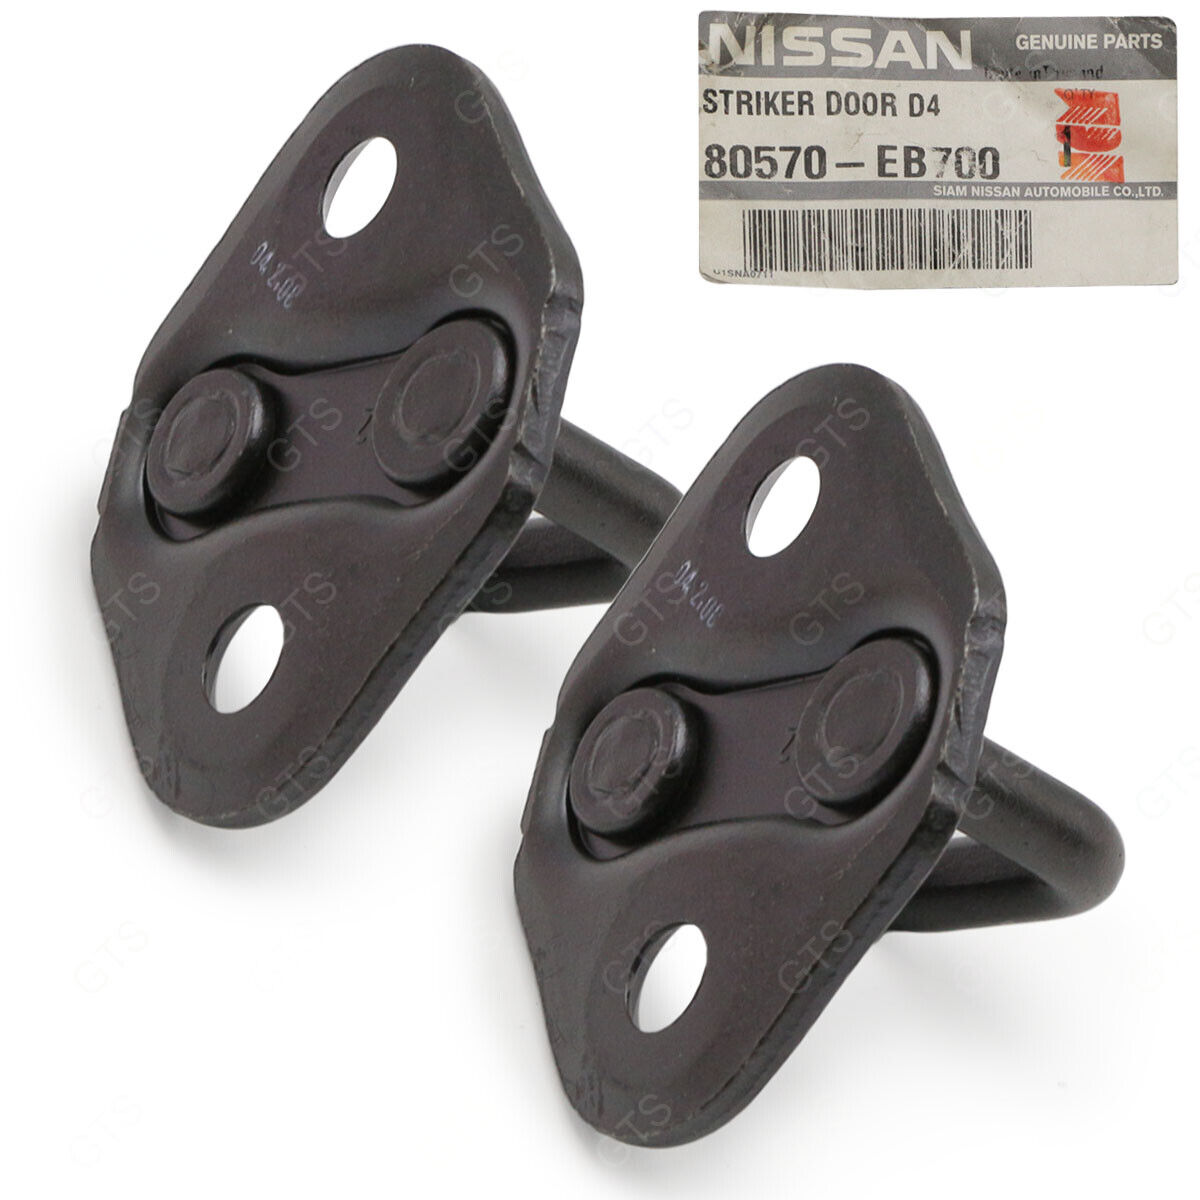 80570-EB700 STRIKER DOOR D40 For Nissan Genuine OEM Part for sale 